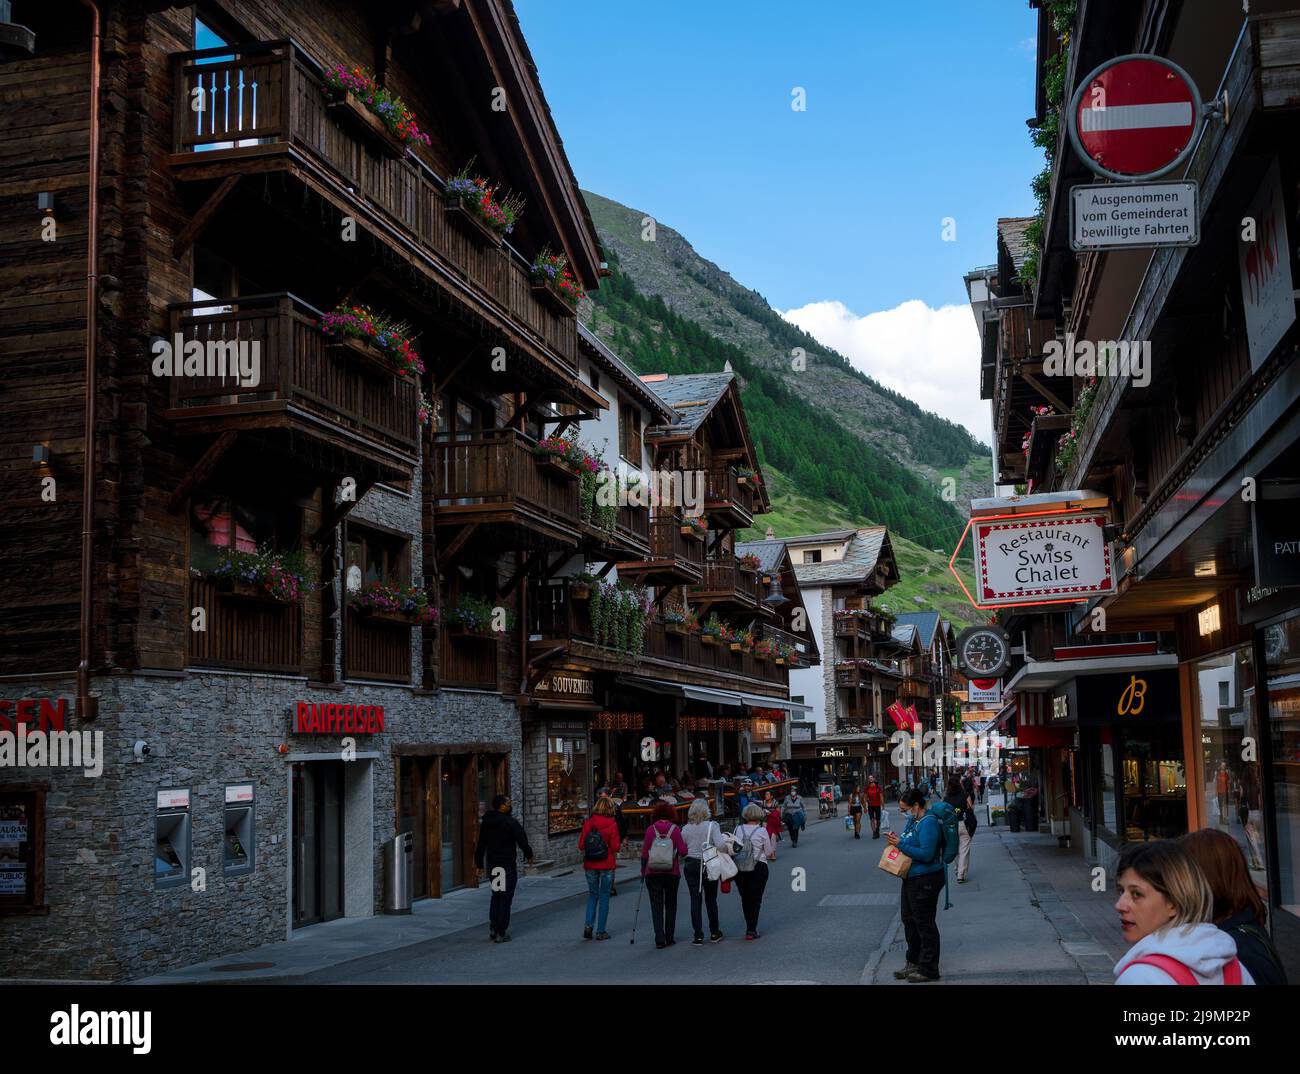 La pintoresca calle comercial principal de Zermatt con restaurantes, casas de campo locales, hoteles y tiendas llenas de turistas capturados en verano Foto de stock